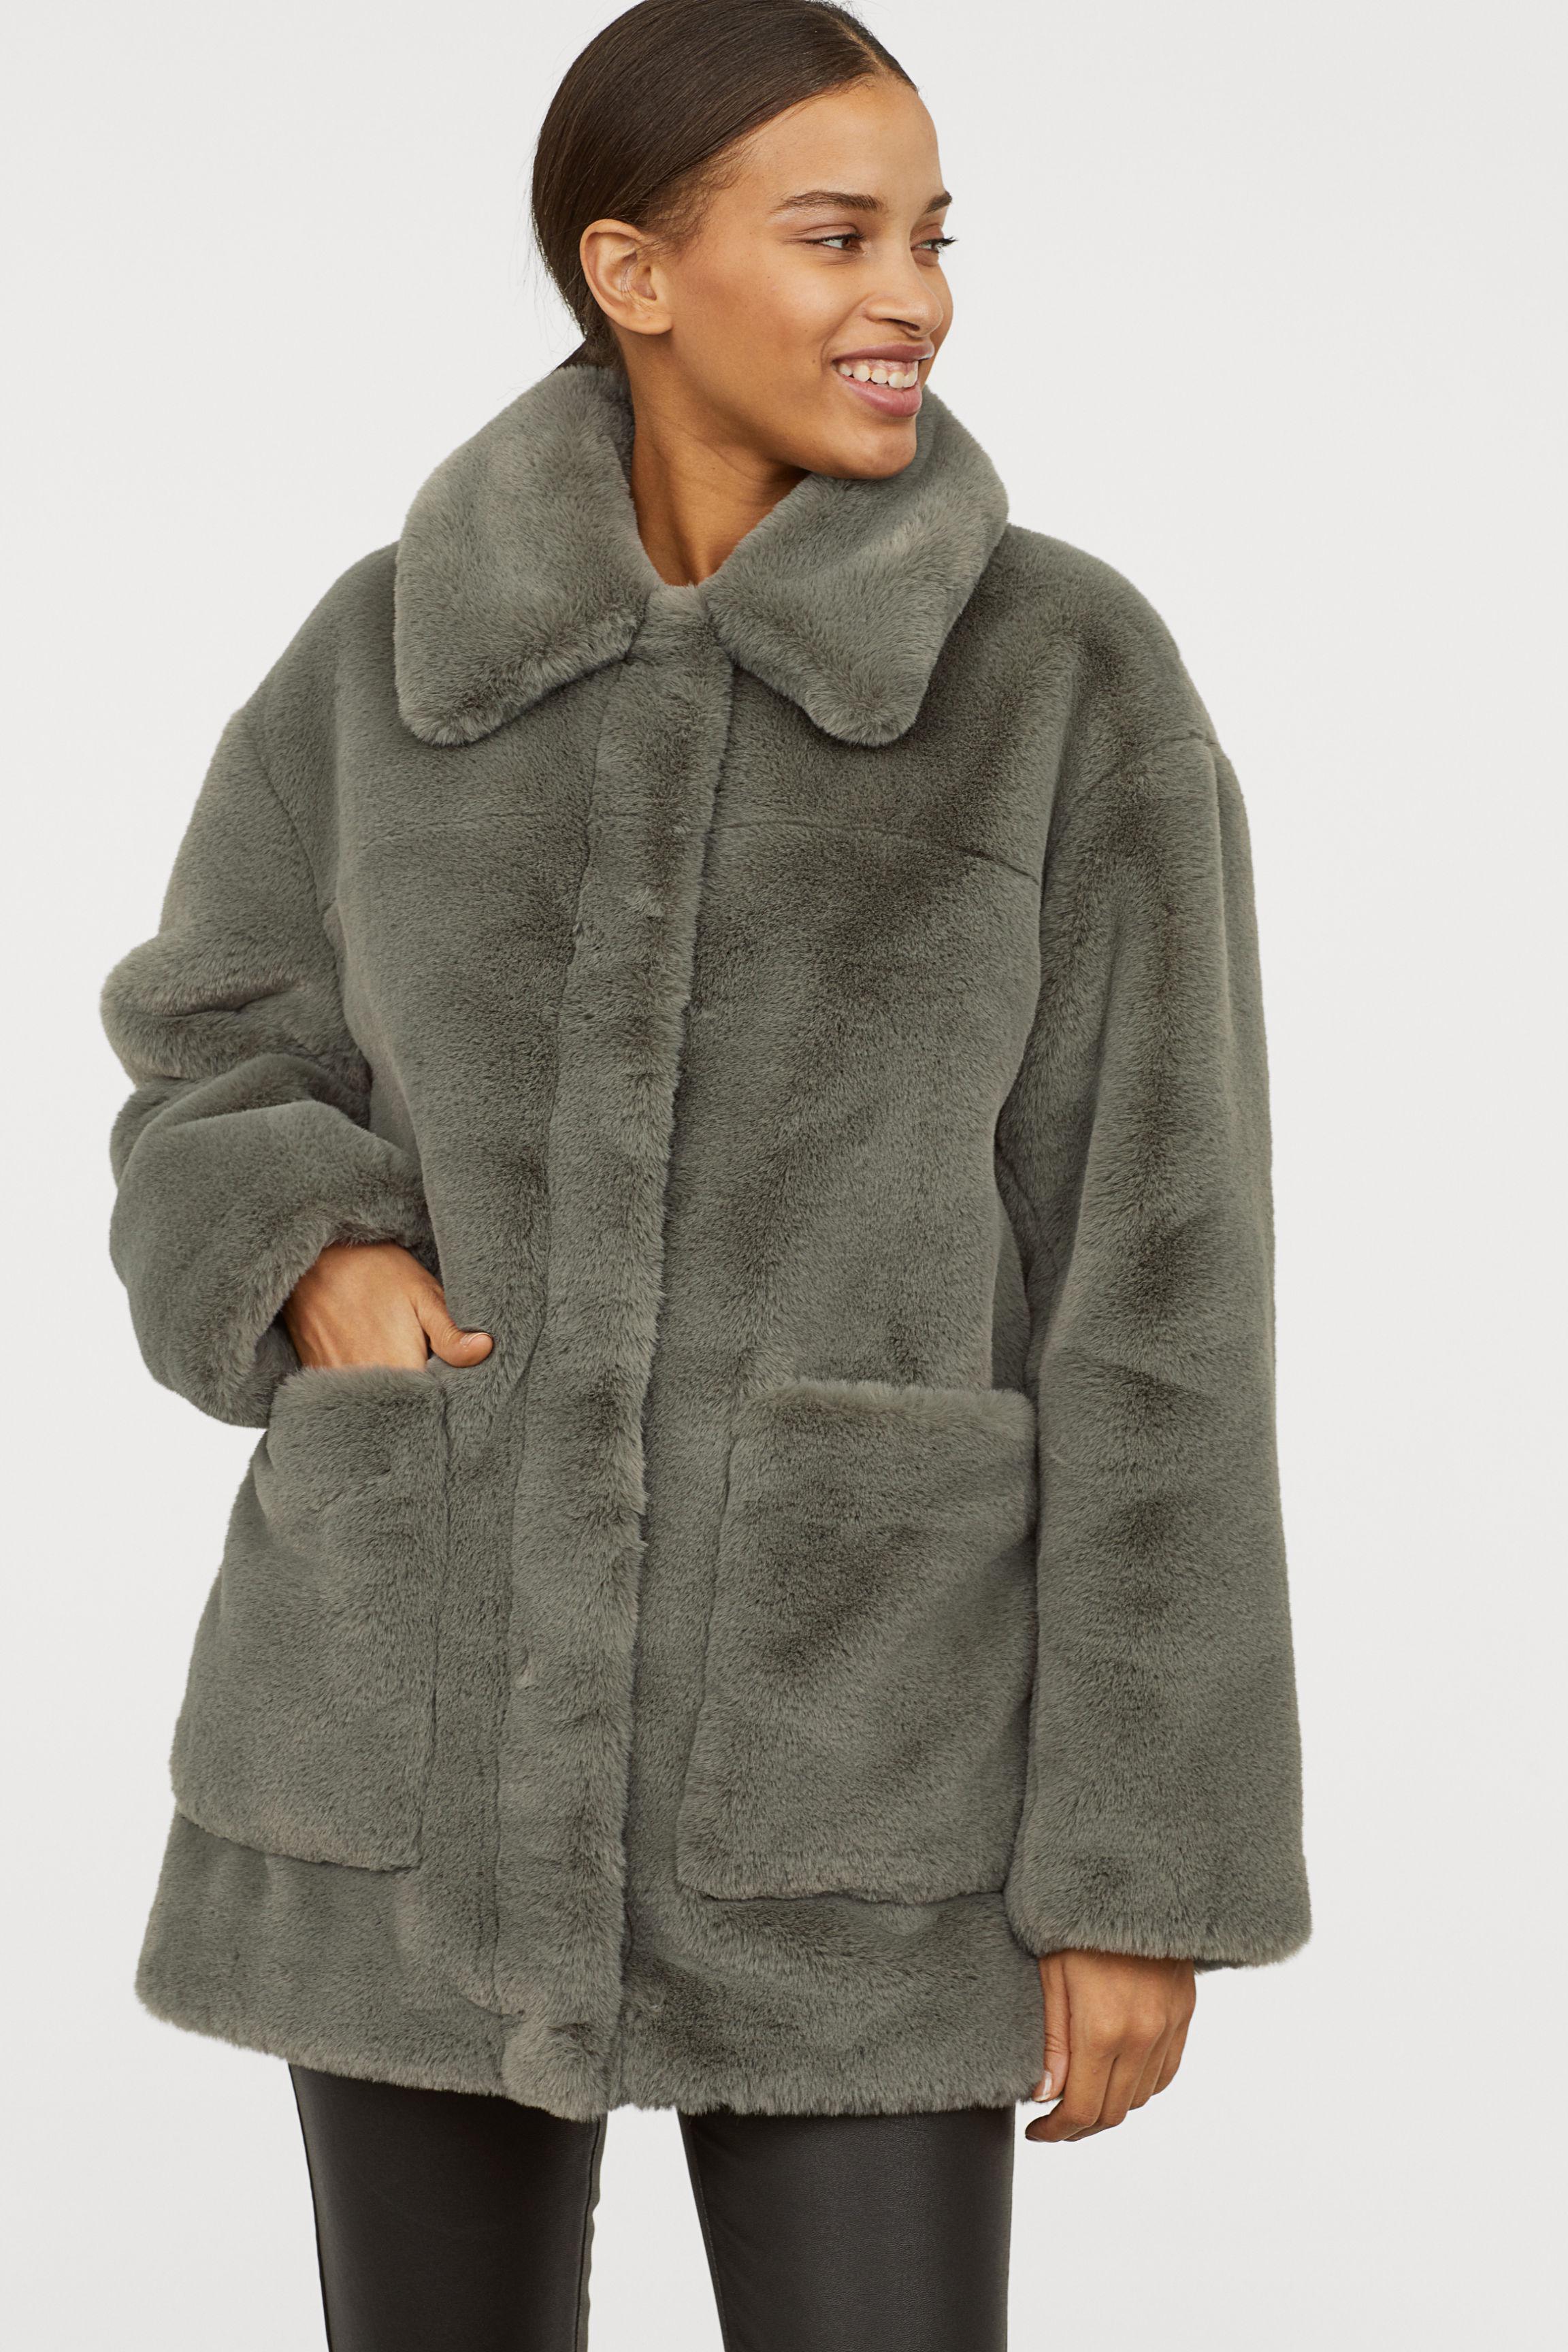 H&M Faux Fur Jacket in Dusky Green (Green) - Lyst